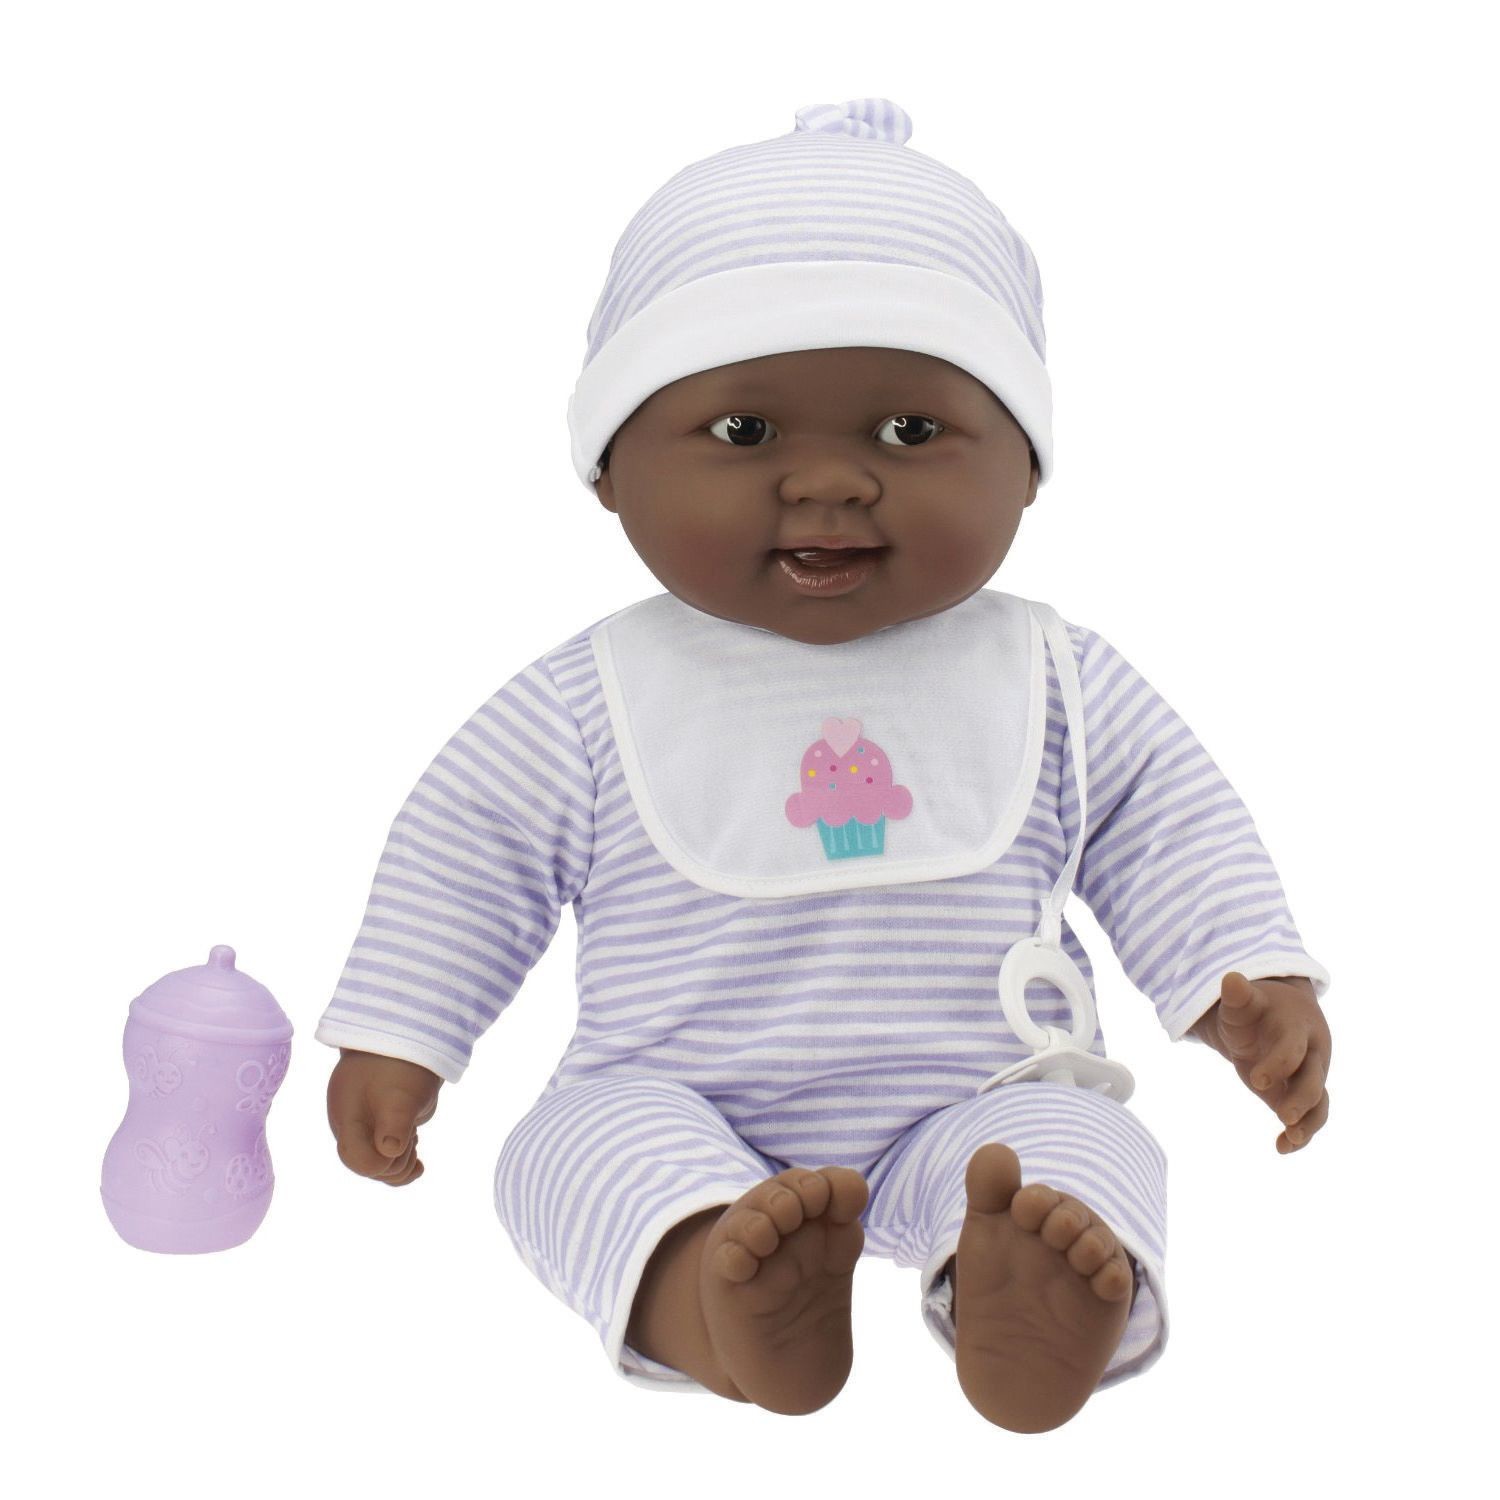 Molto carino 8" Soft corposo Baby doll in aperta Sedia Baby 